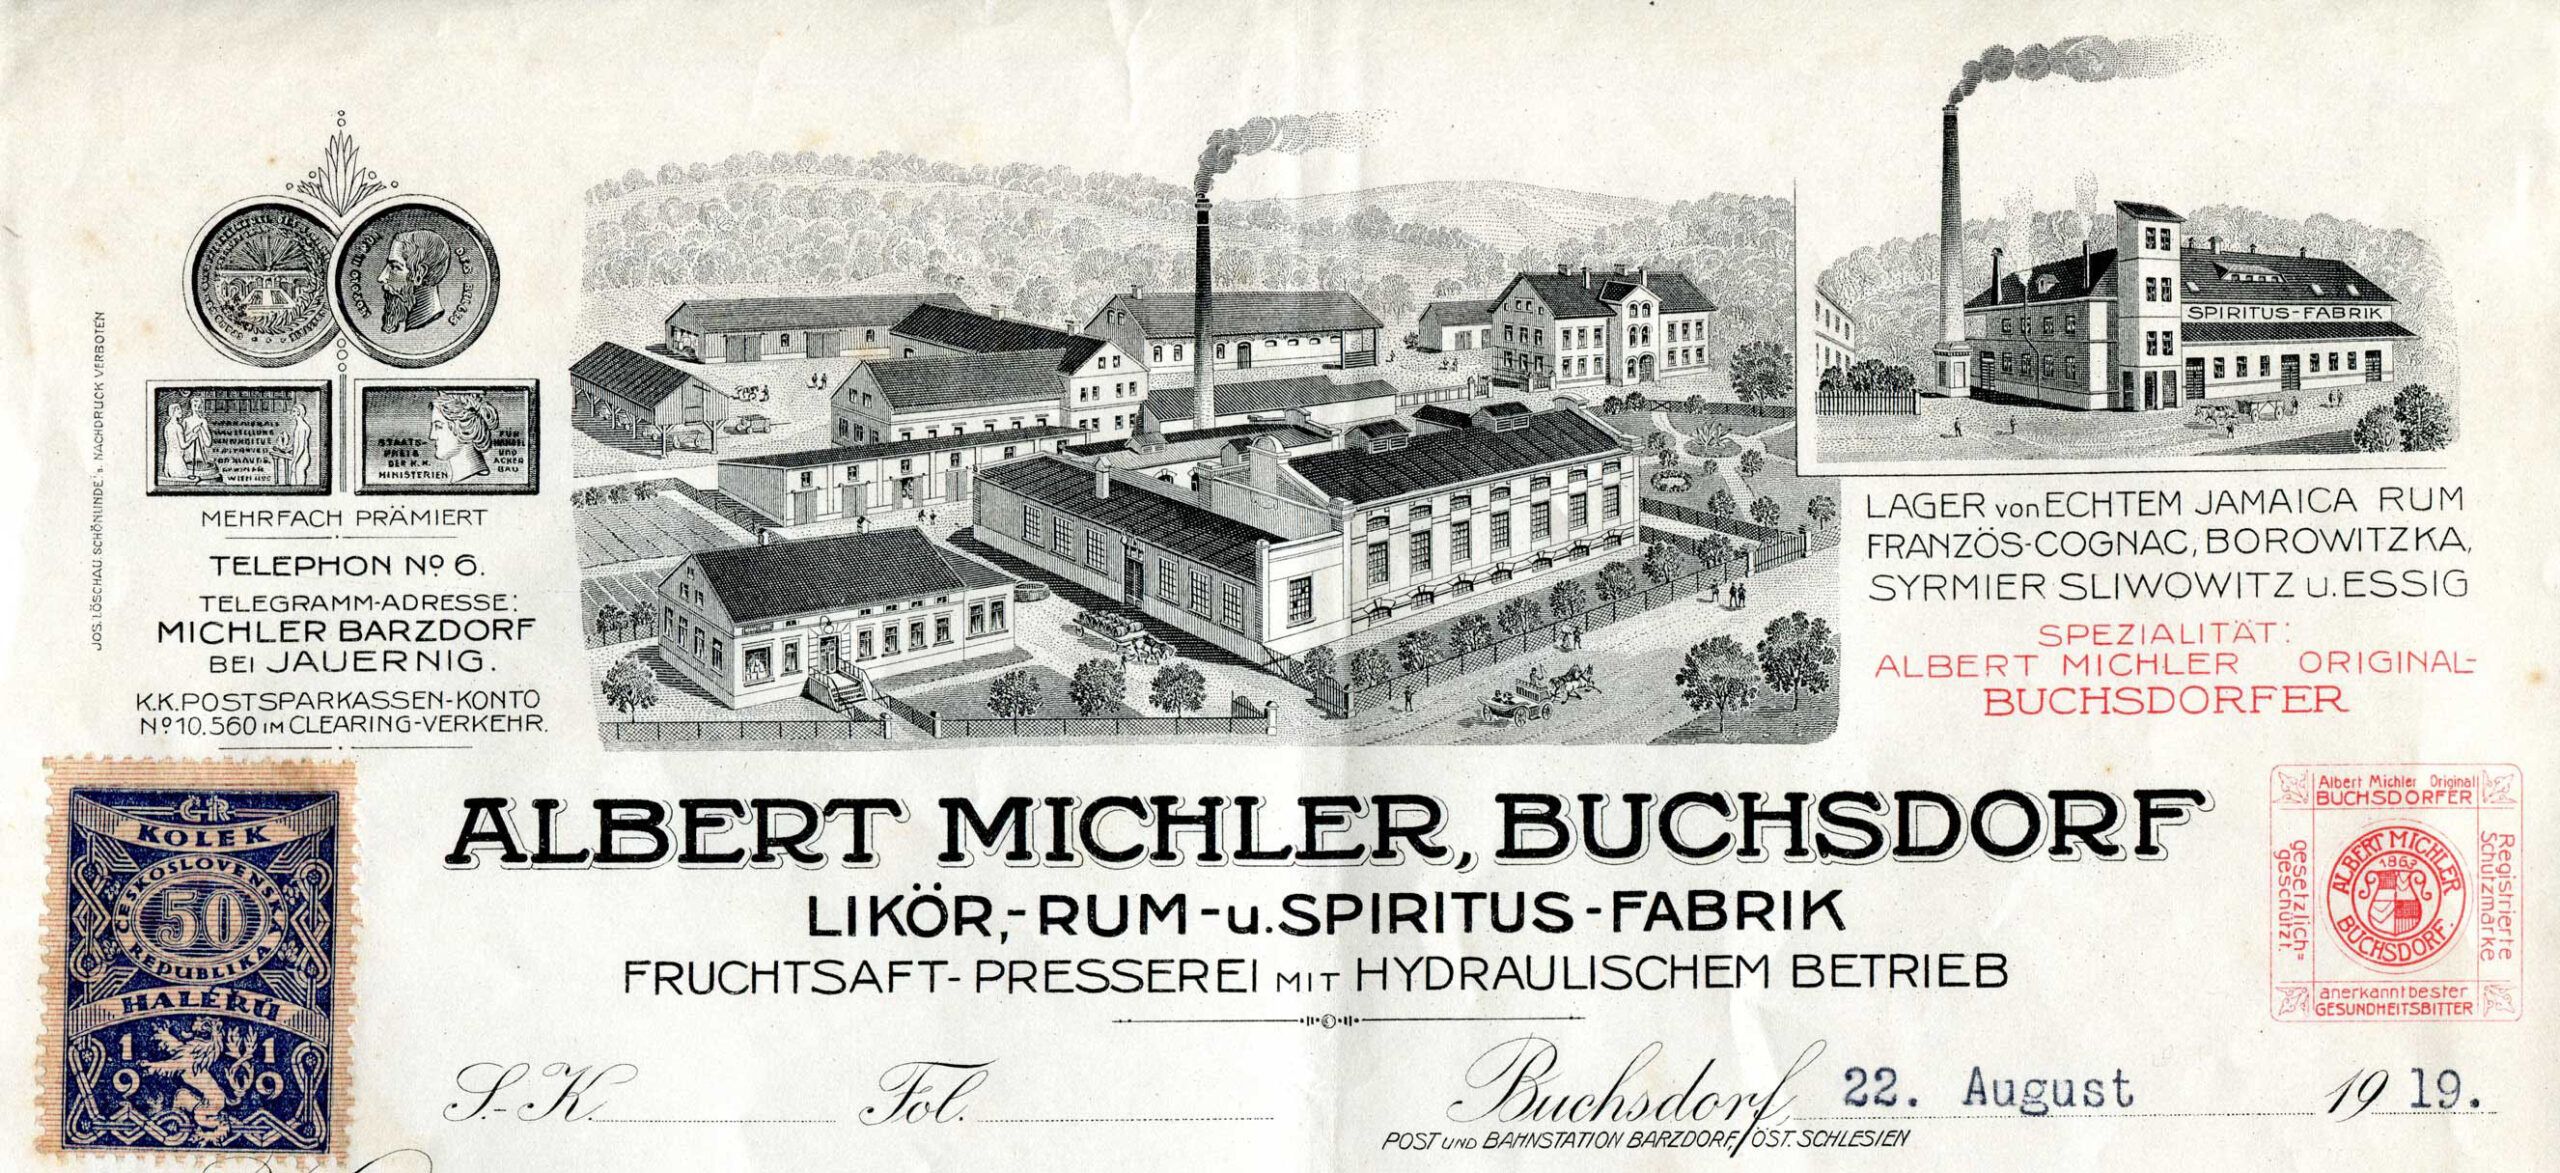 Albert Michler, Buchsdorf - Likör, rum, spiritus fabrik, záhlaví faktury z roku 1919